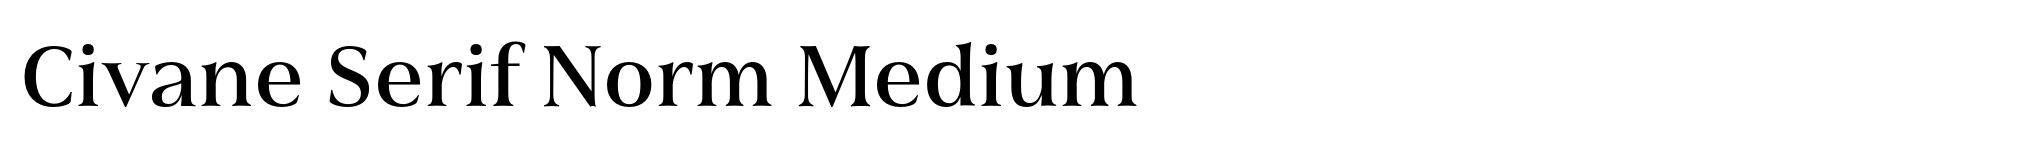 Civane Serif Norm Medium image